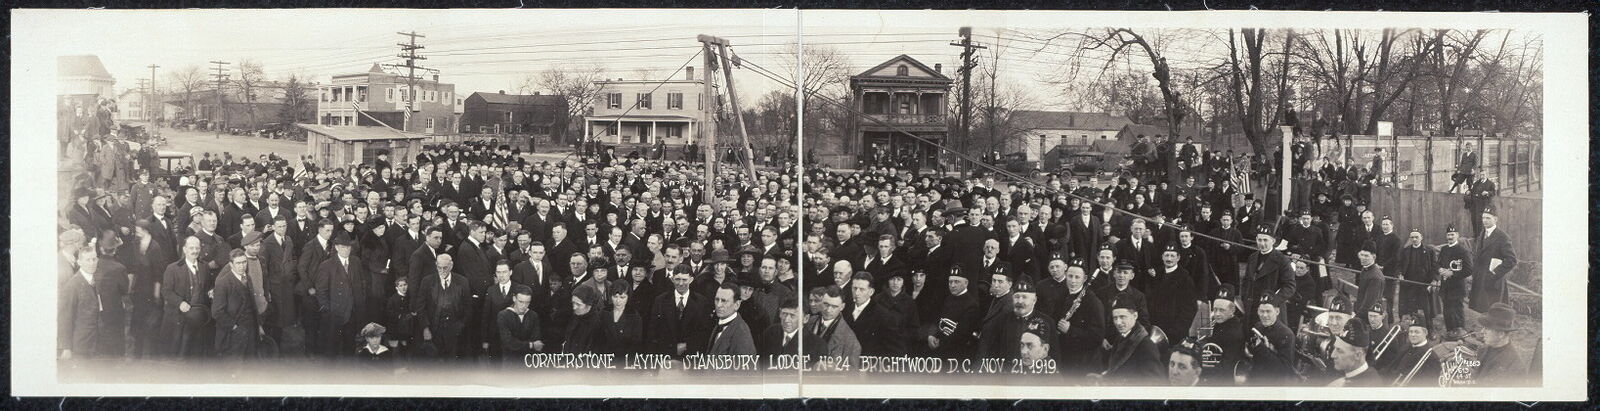 1919 Panoramic: Cornerstone laying,Stansbury Lodge No. 24,Brightwood,Wash. DC